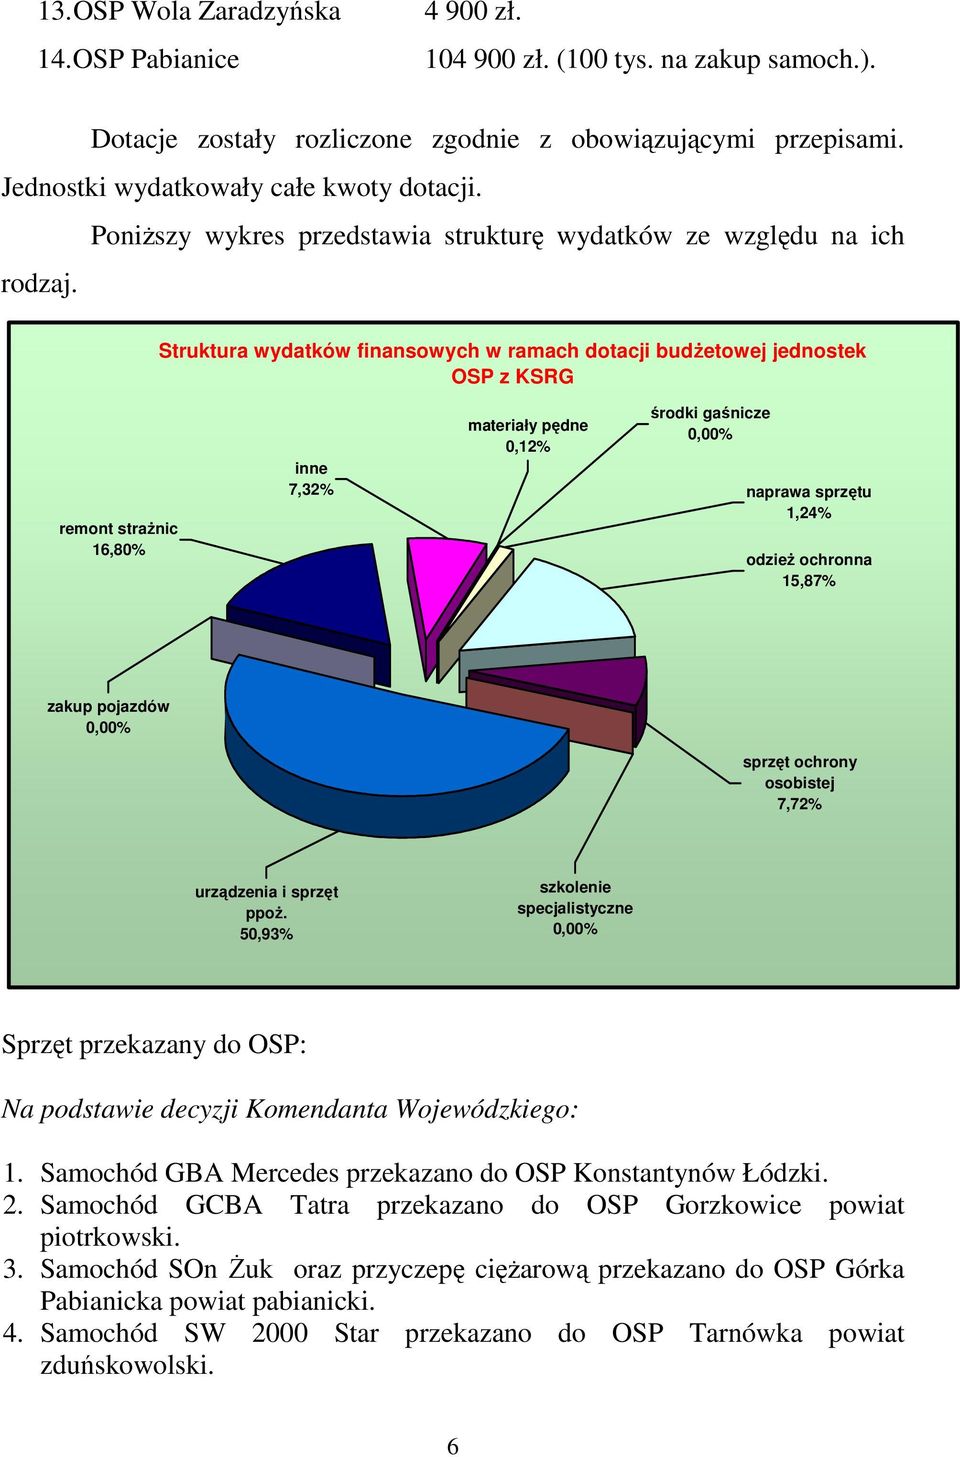 Struktura wydatków finansowych w ramach dotacji budŝetowej jednostek OSP z KSRG remont straŝnic 16,80% inne 7,32% materiały pędne 0,% środki gaśnicze 0,00% naprawa sprzętu 1,24% odzieŝ ochronna